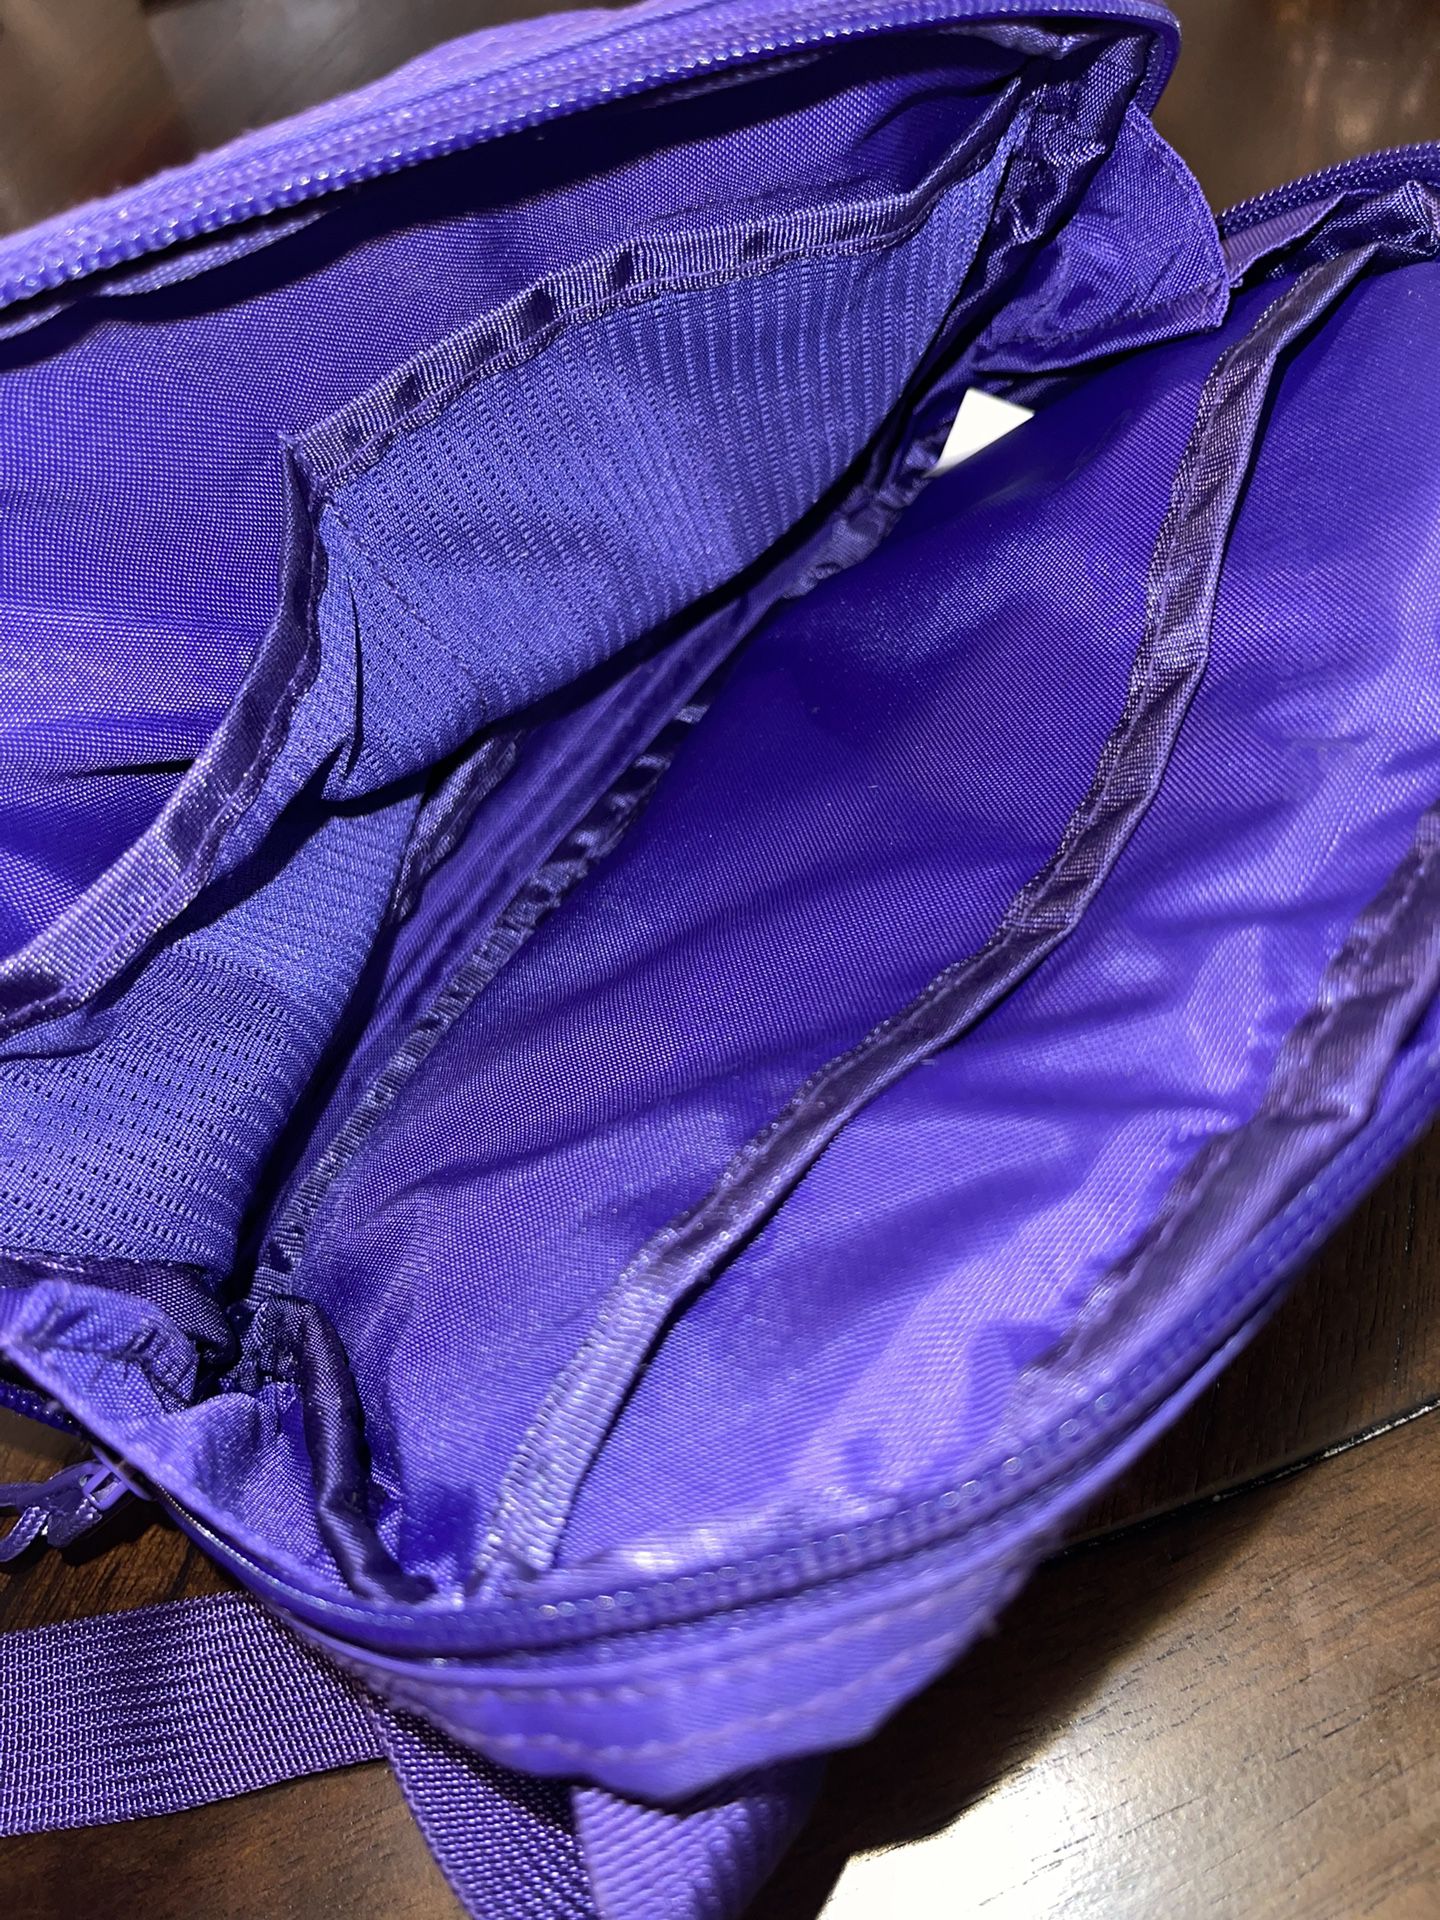 Supreme FW18 Shoulder Bag for Sale in Surprise, AZ - OfferUp